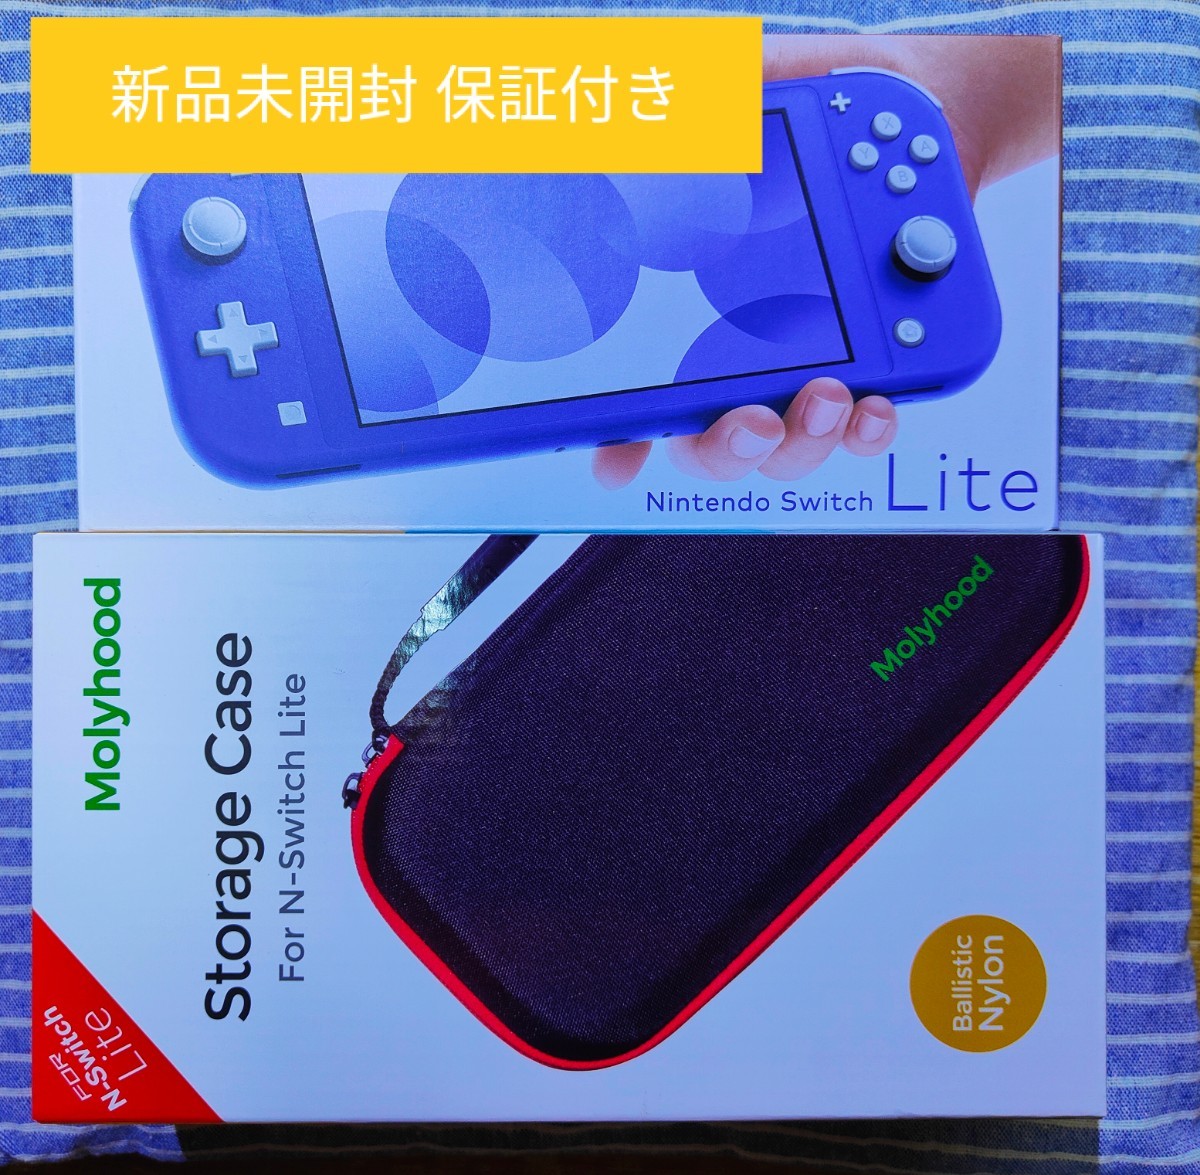 新品未開封 Nintendo Switch Lite ブルー アクセサリーセット付 任天堂スイッチライト メーカー保証期間あり